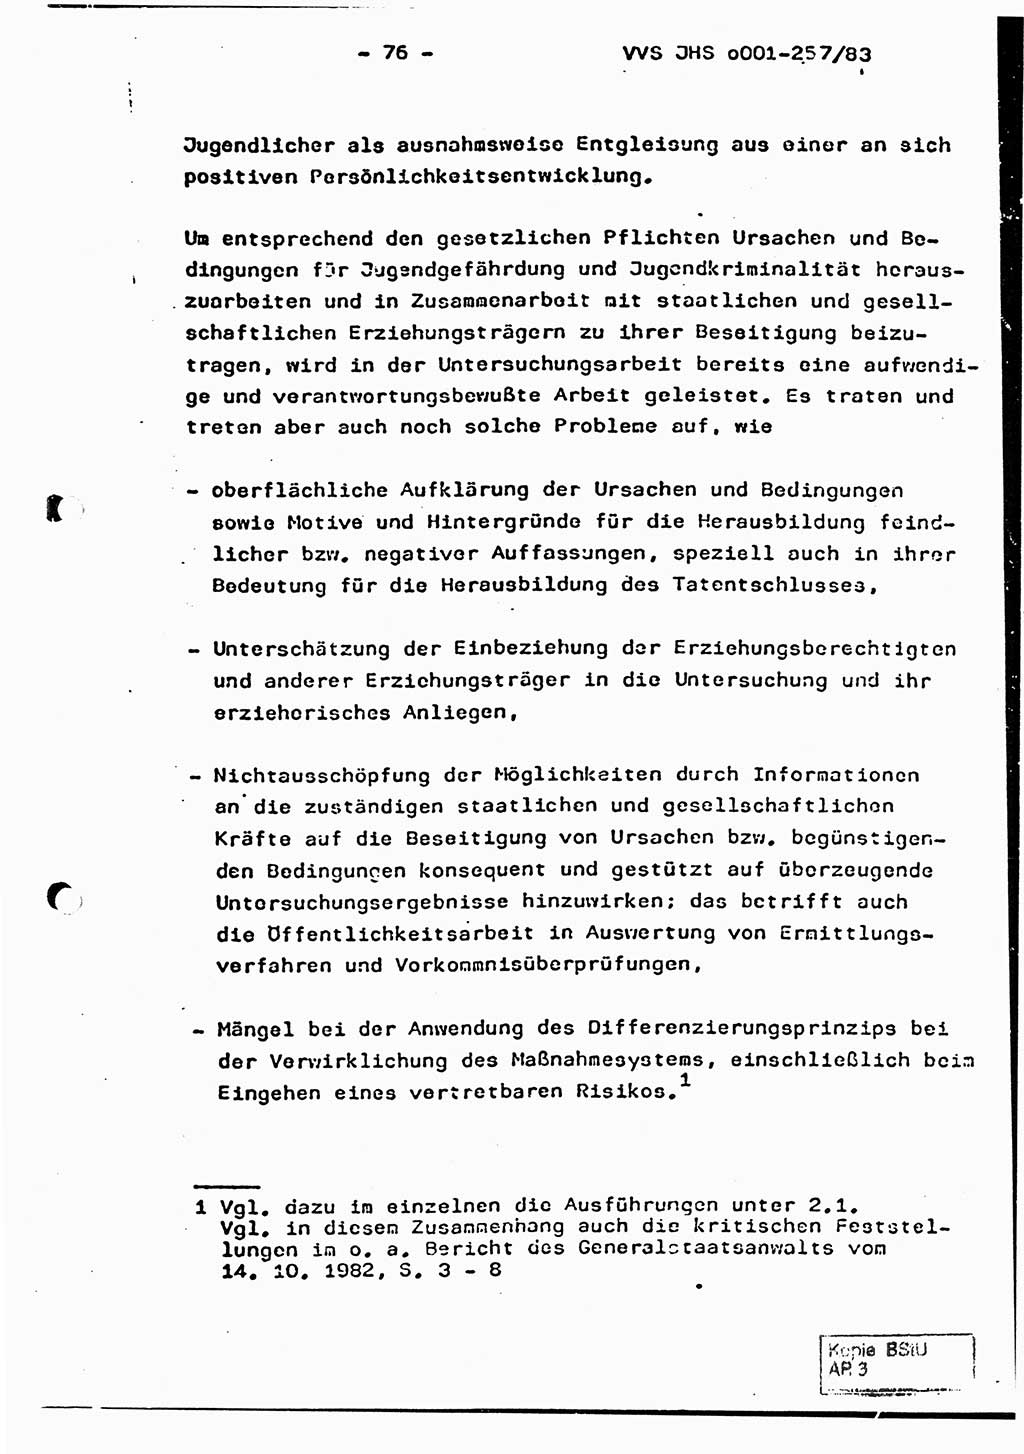 Dissertation, Oberst Helmut Lubas (BV Mdg.), Oberstleutnant Manfred Eschberger (HA IX), Oberleutnant Hans-Jürgen Ludwig (JHS), Ministerium für Staatssicherheit (MfS) [Deutsche Demokratische Republik (DDR)], Juristische Hochschule (JHS), Vertrauliche Verschlußsache (VVS) o001-257/83, Potsdam 1983, Seite 76 (Diss. MfS DDR JHS VVS o001-257/83 1983, S. 76)